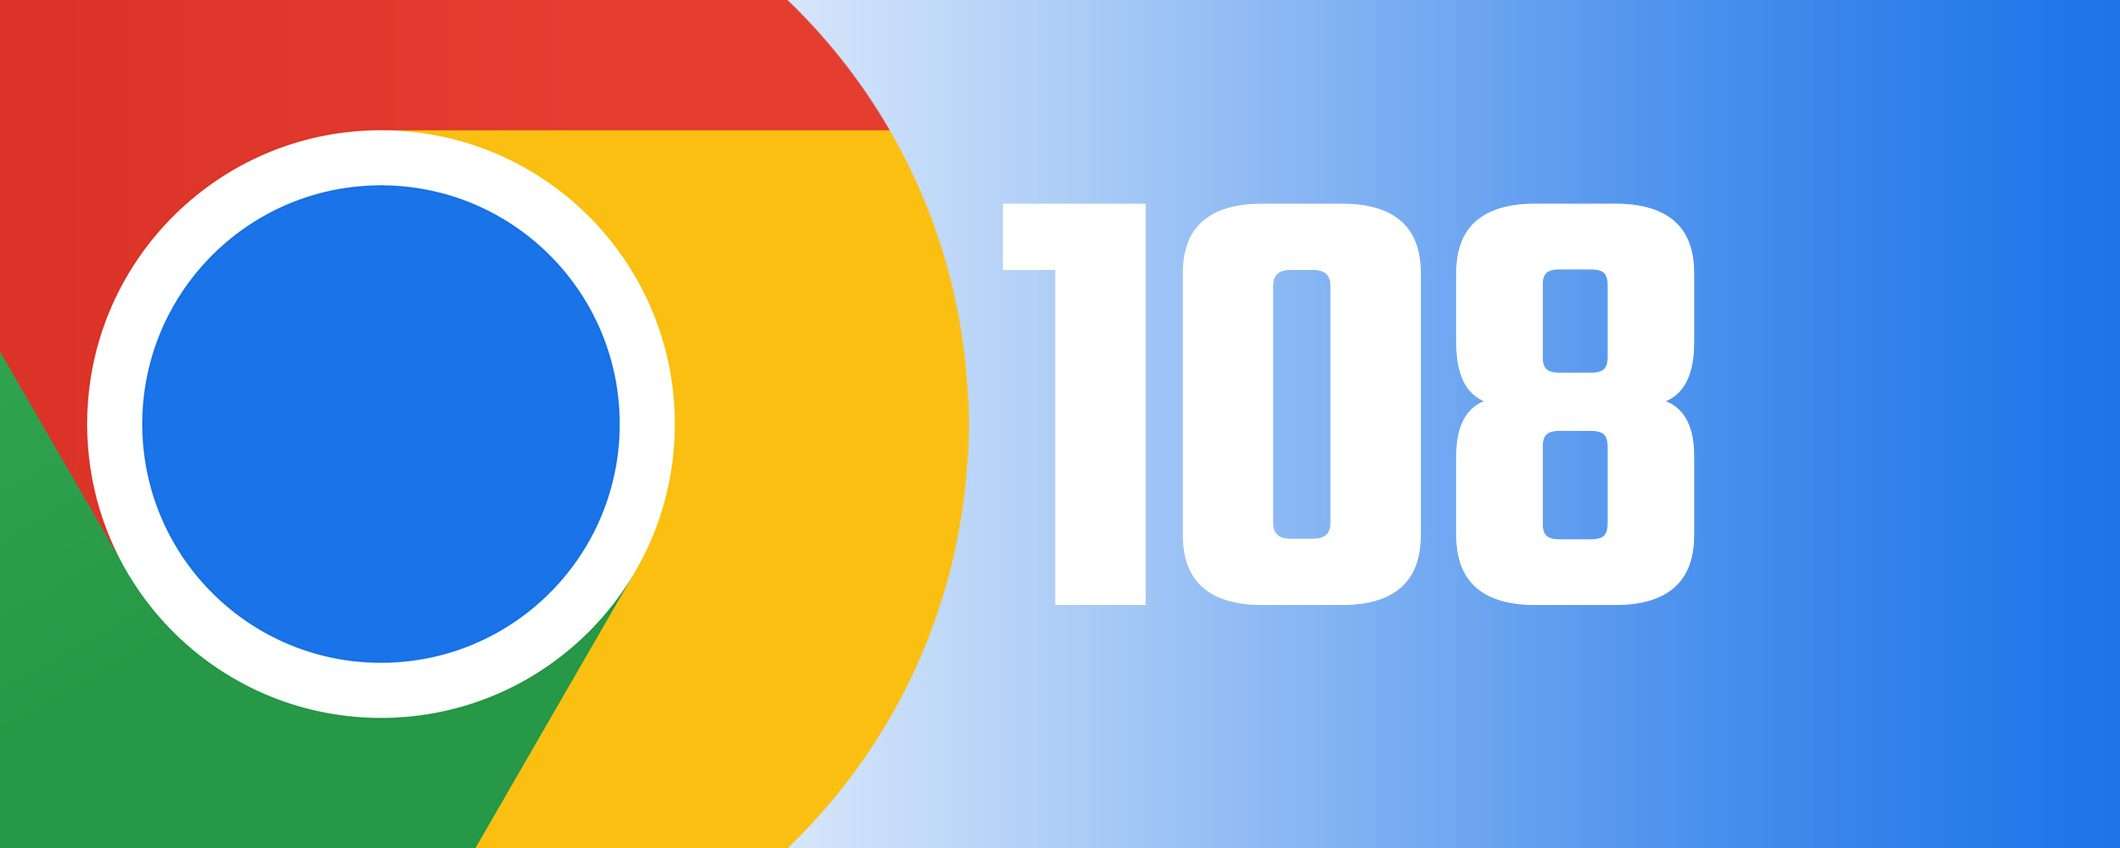 Chrome 108: passkey su Windows, macOS e Android